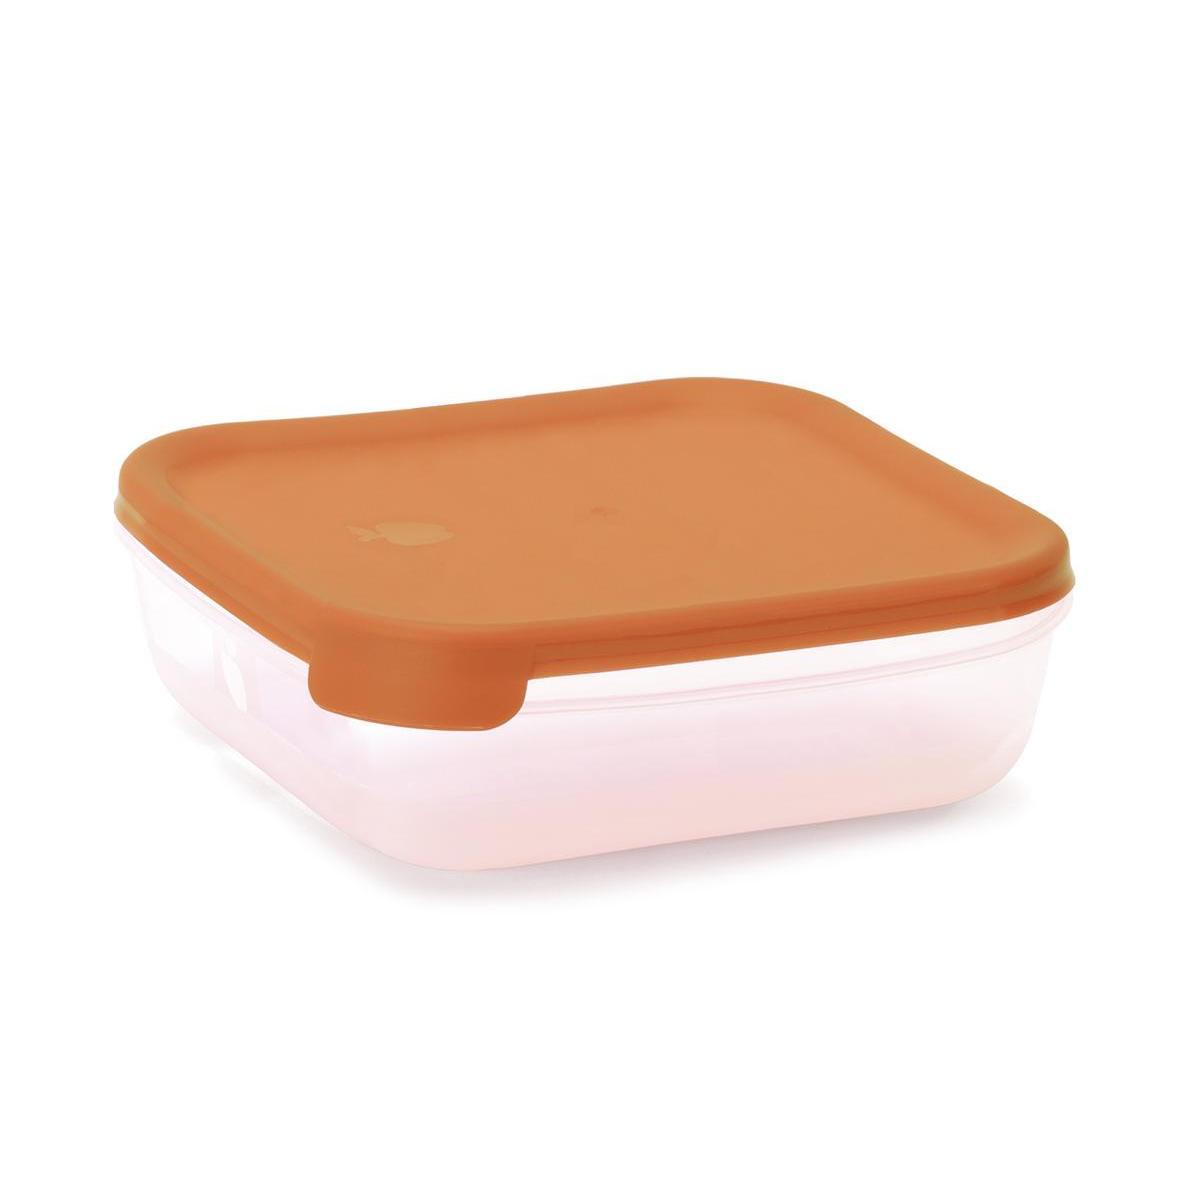 Boîte alimentaire - 1.2 L - Différents coloris - Transparent & orange, vert, bleu ou rose